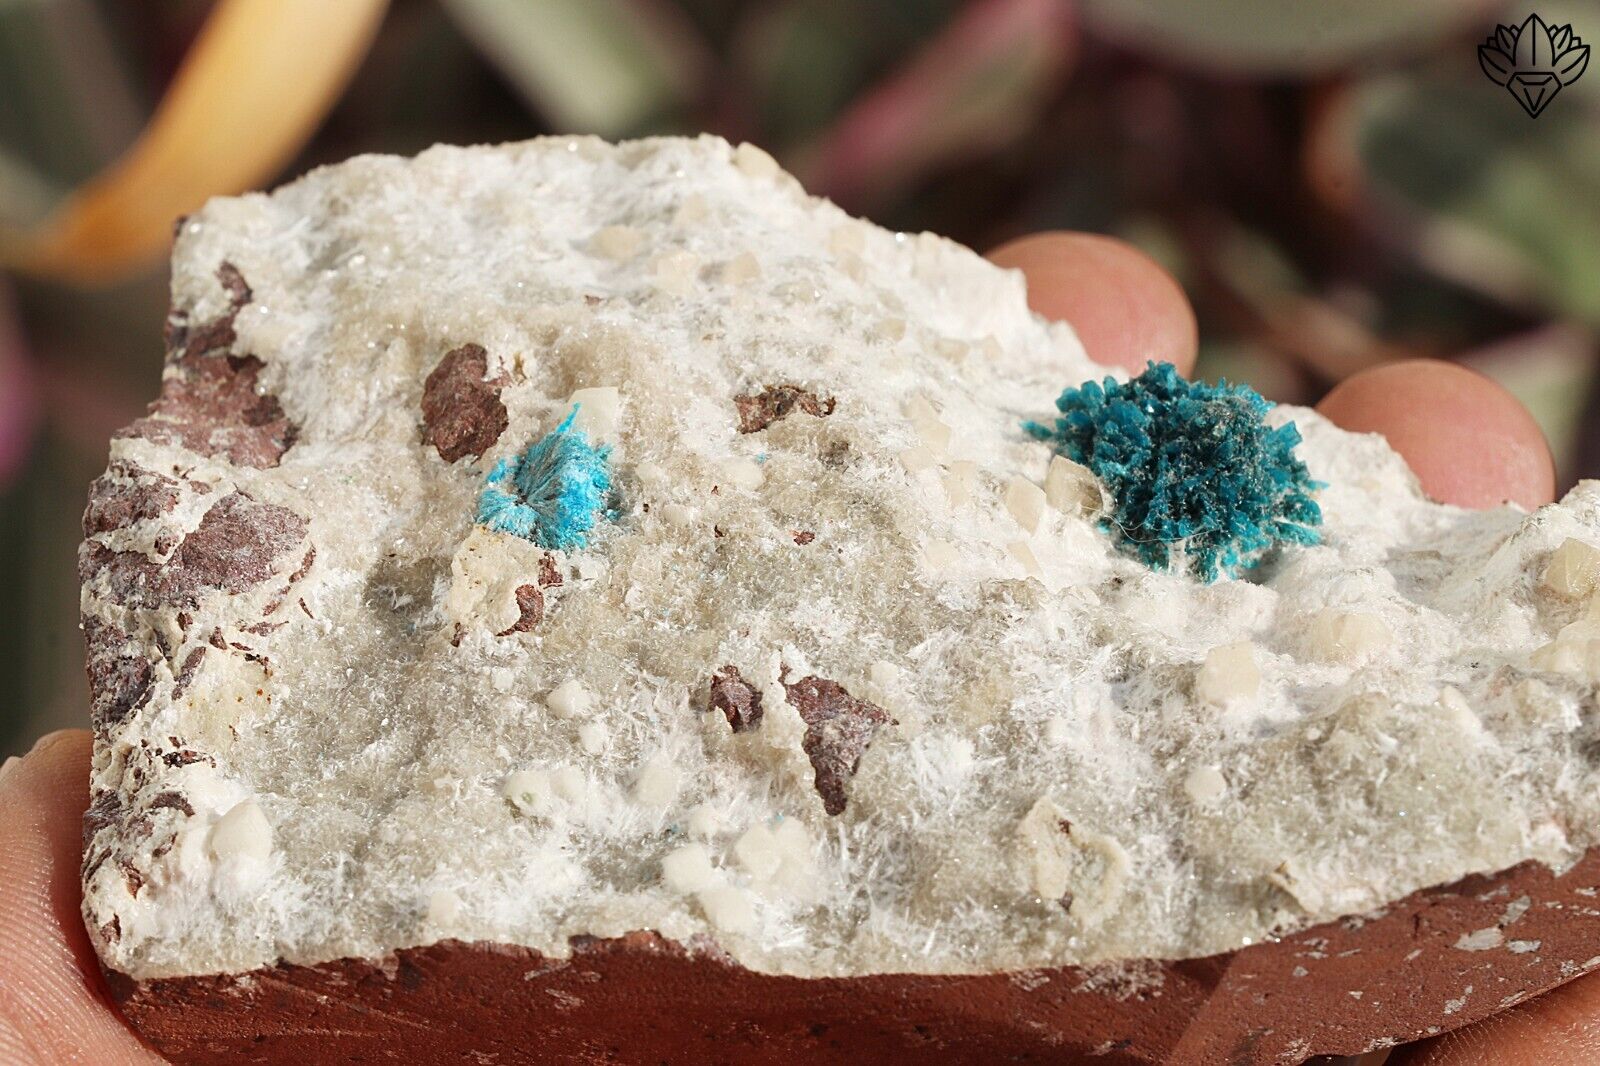 Amazing Natural Cavansite Rough Stone For Home Decoration 267 gram Raw Specimen